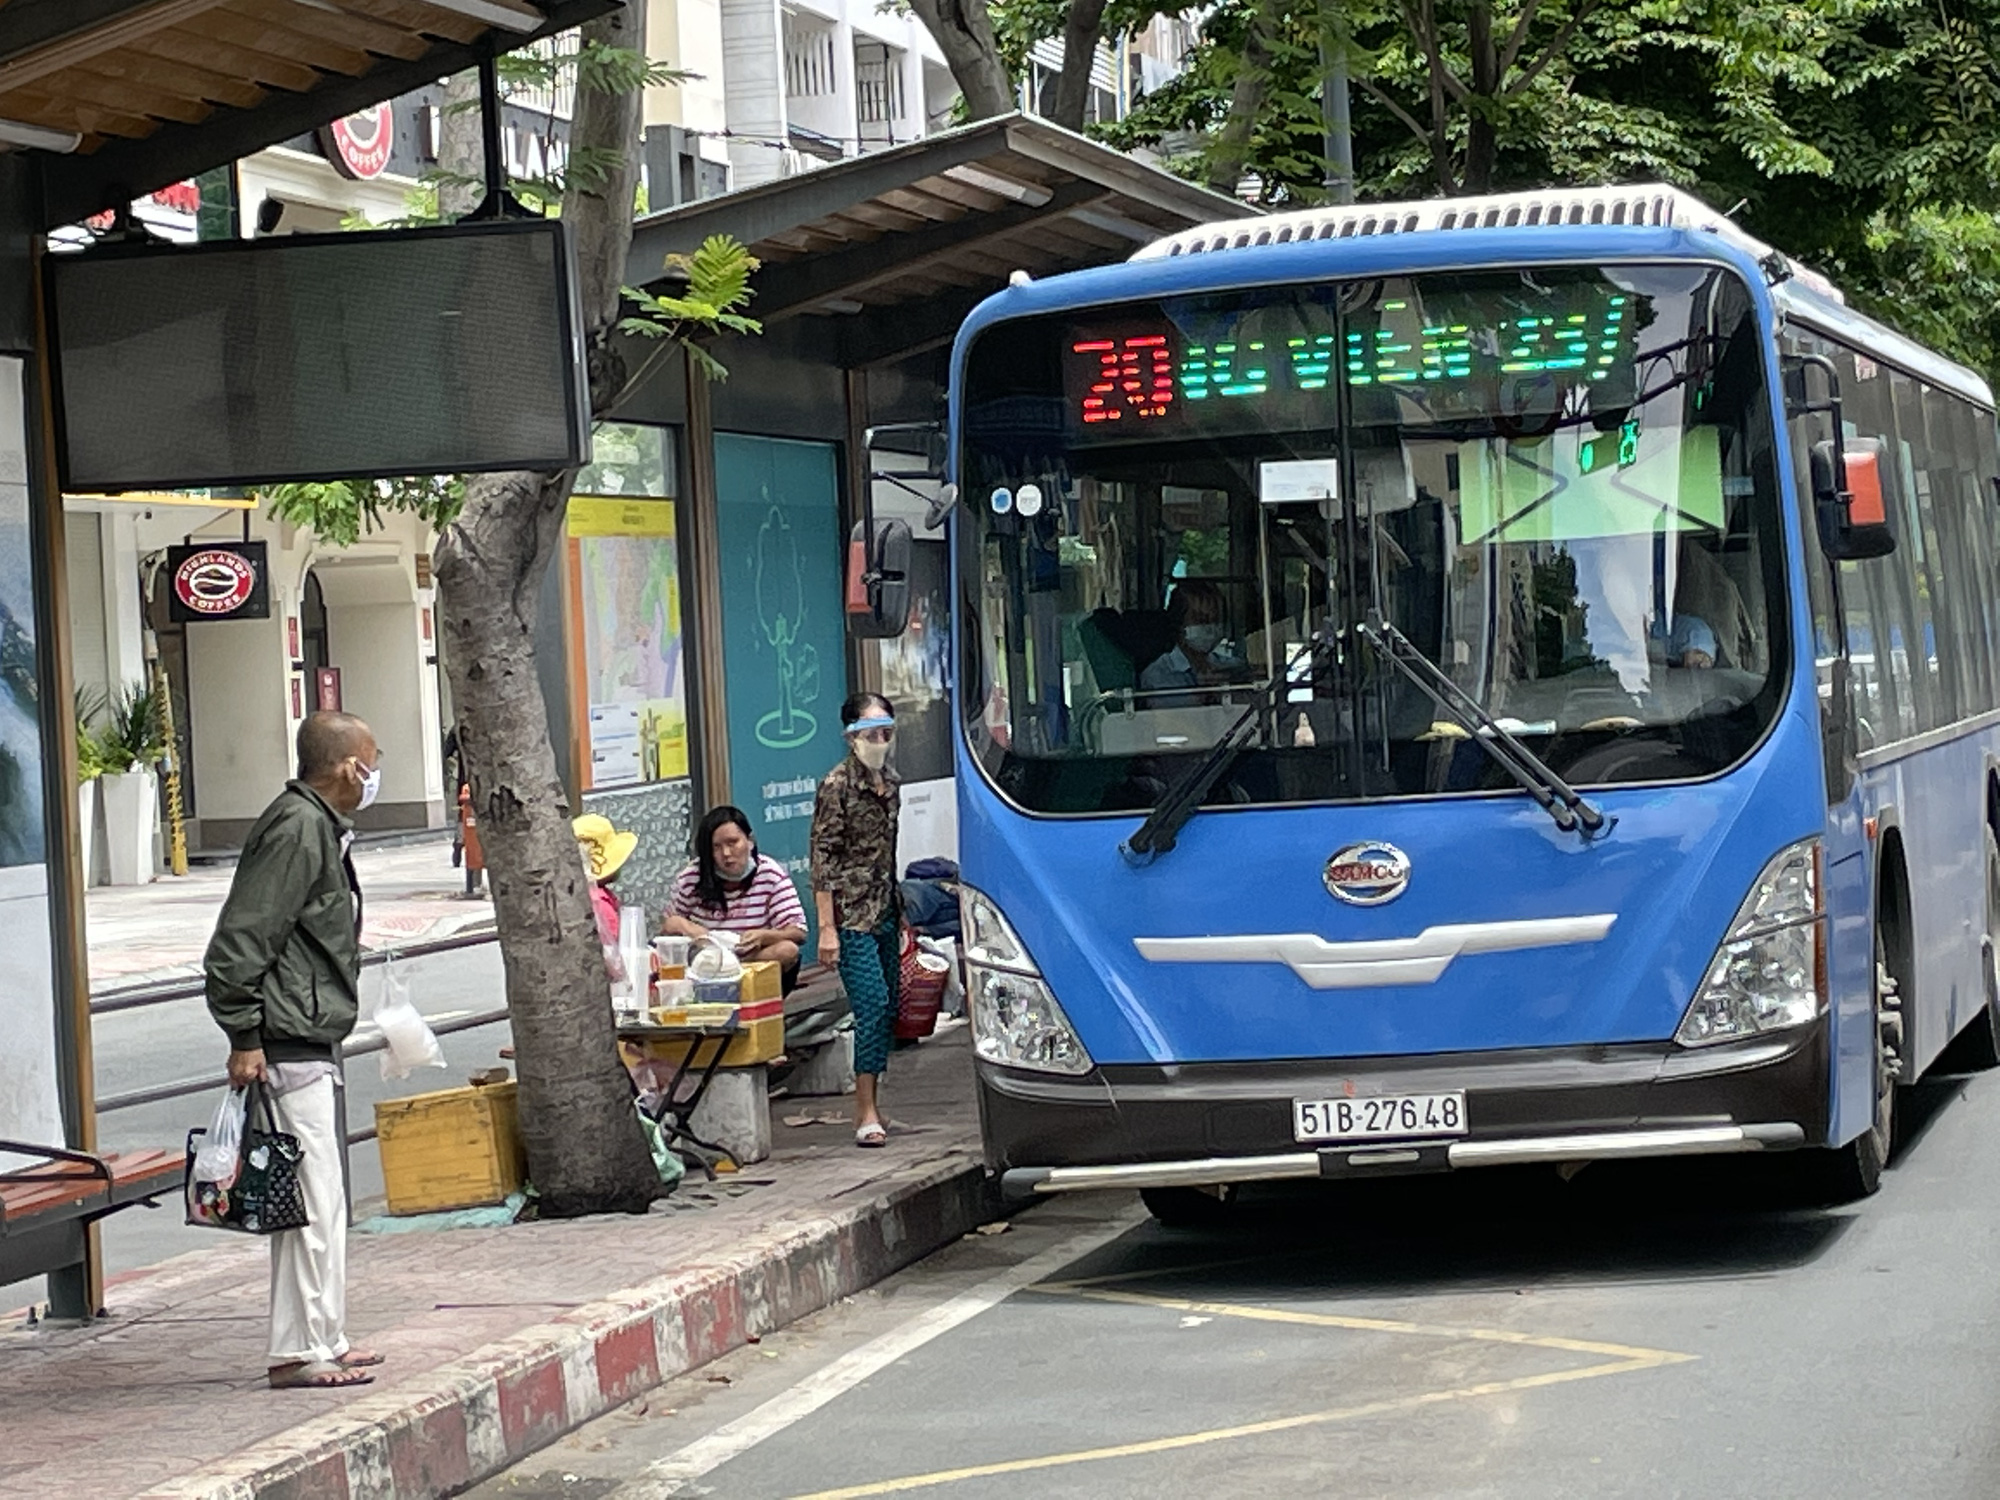 Xe buýt: Trải nghiệm độc đáo trên xe buýt đang chờ đón bạn! Khám phá thành phố đầy sắc màu và du lịch thoải mái hơn bao giờ hết bằng dịch vụ xe buýt tiện lợi của chúng tôi.